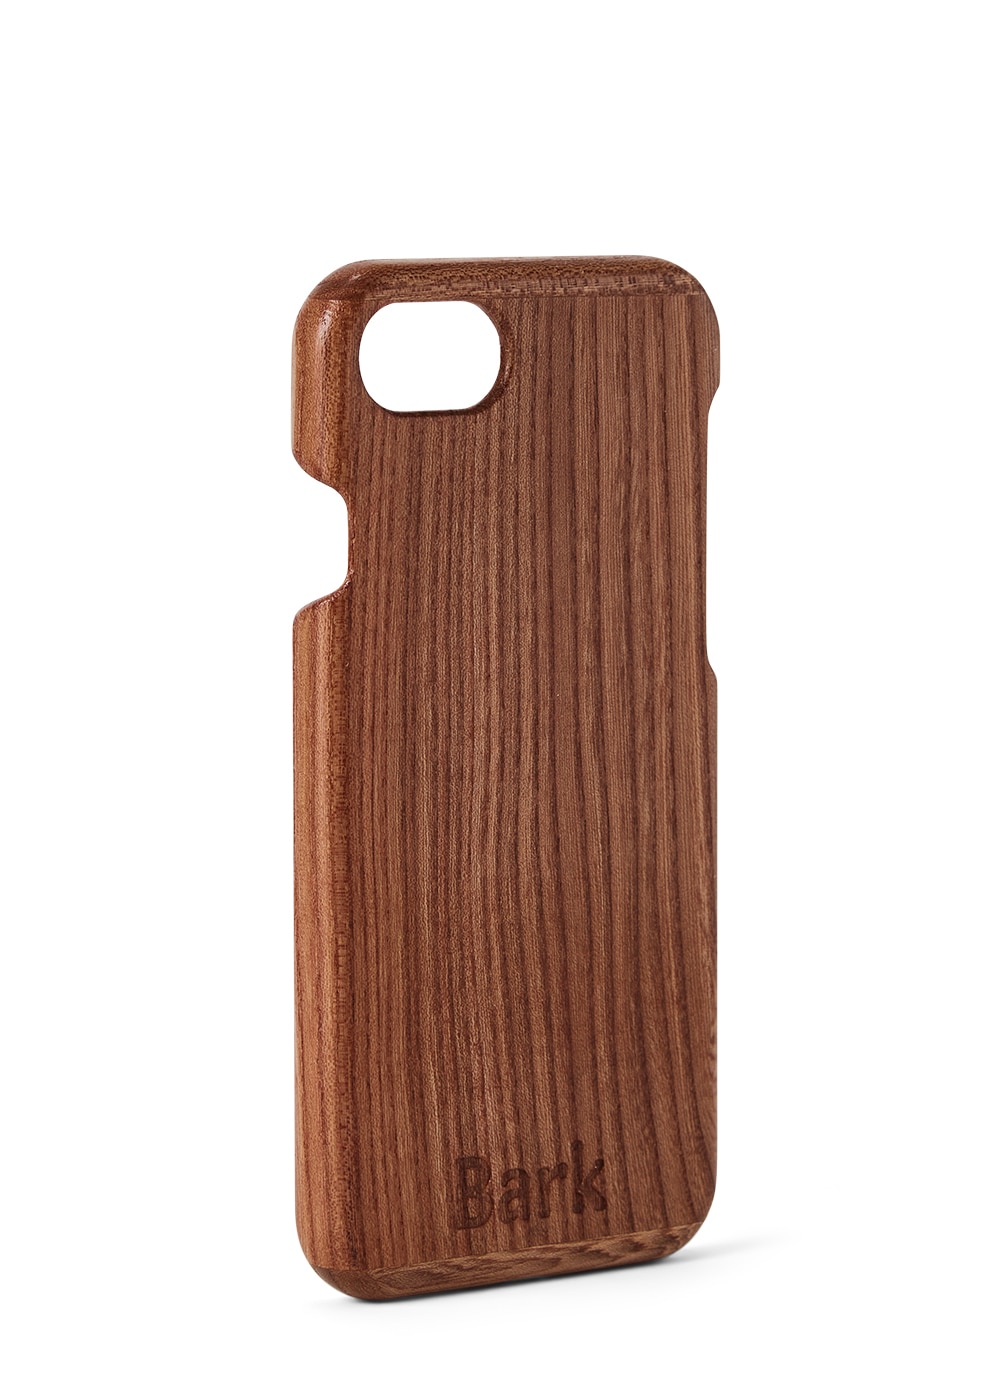 iPhone SE (2020) coque en bois de feuillus suédois - Alm